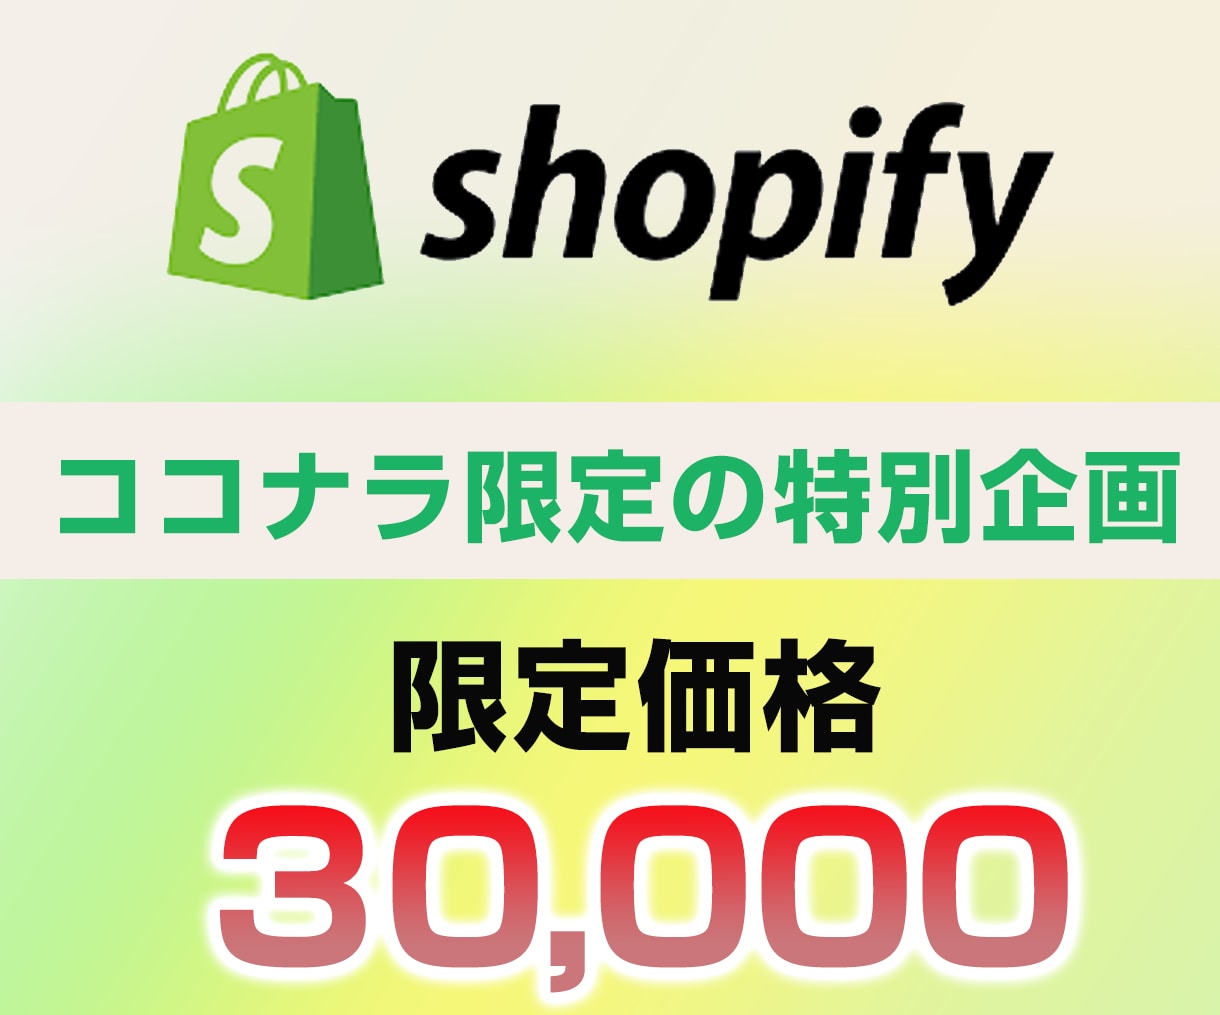 ShopifyでECサイト制作します プロにお任せください！格安/高品質/フルサポート/初心者歓迎 イメージ1